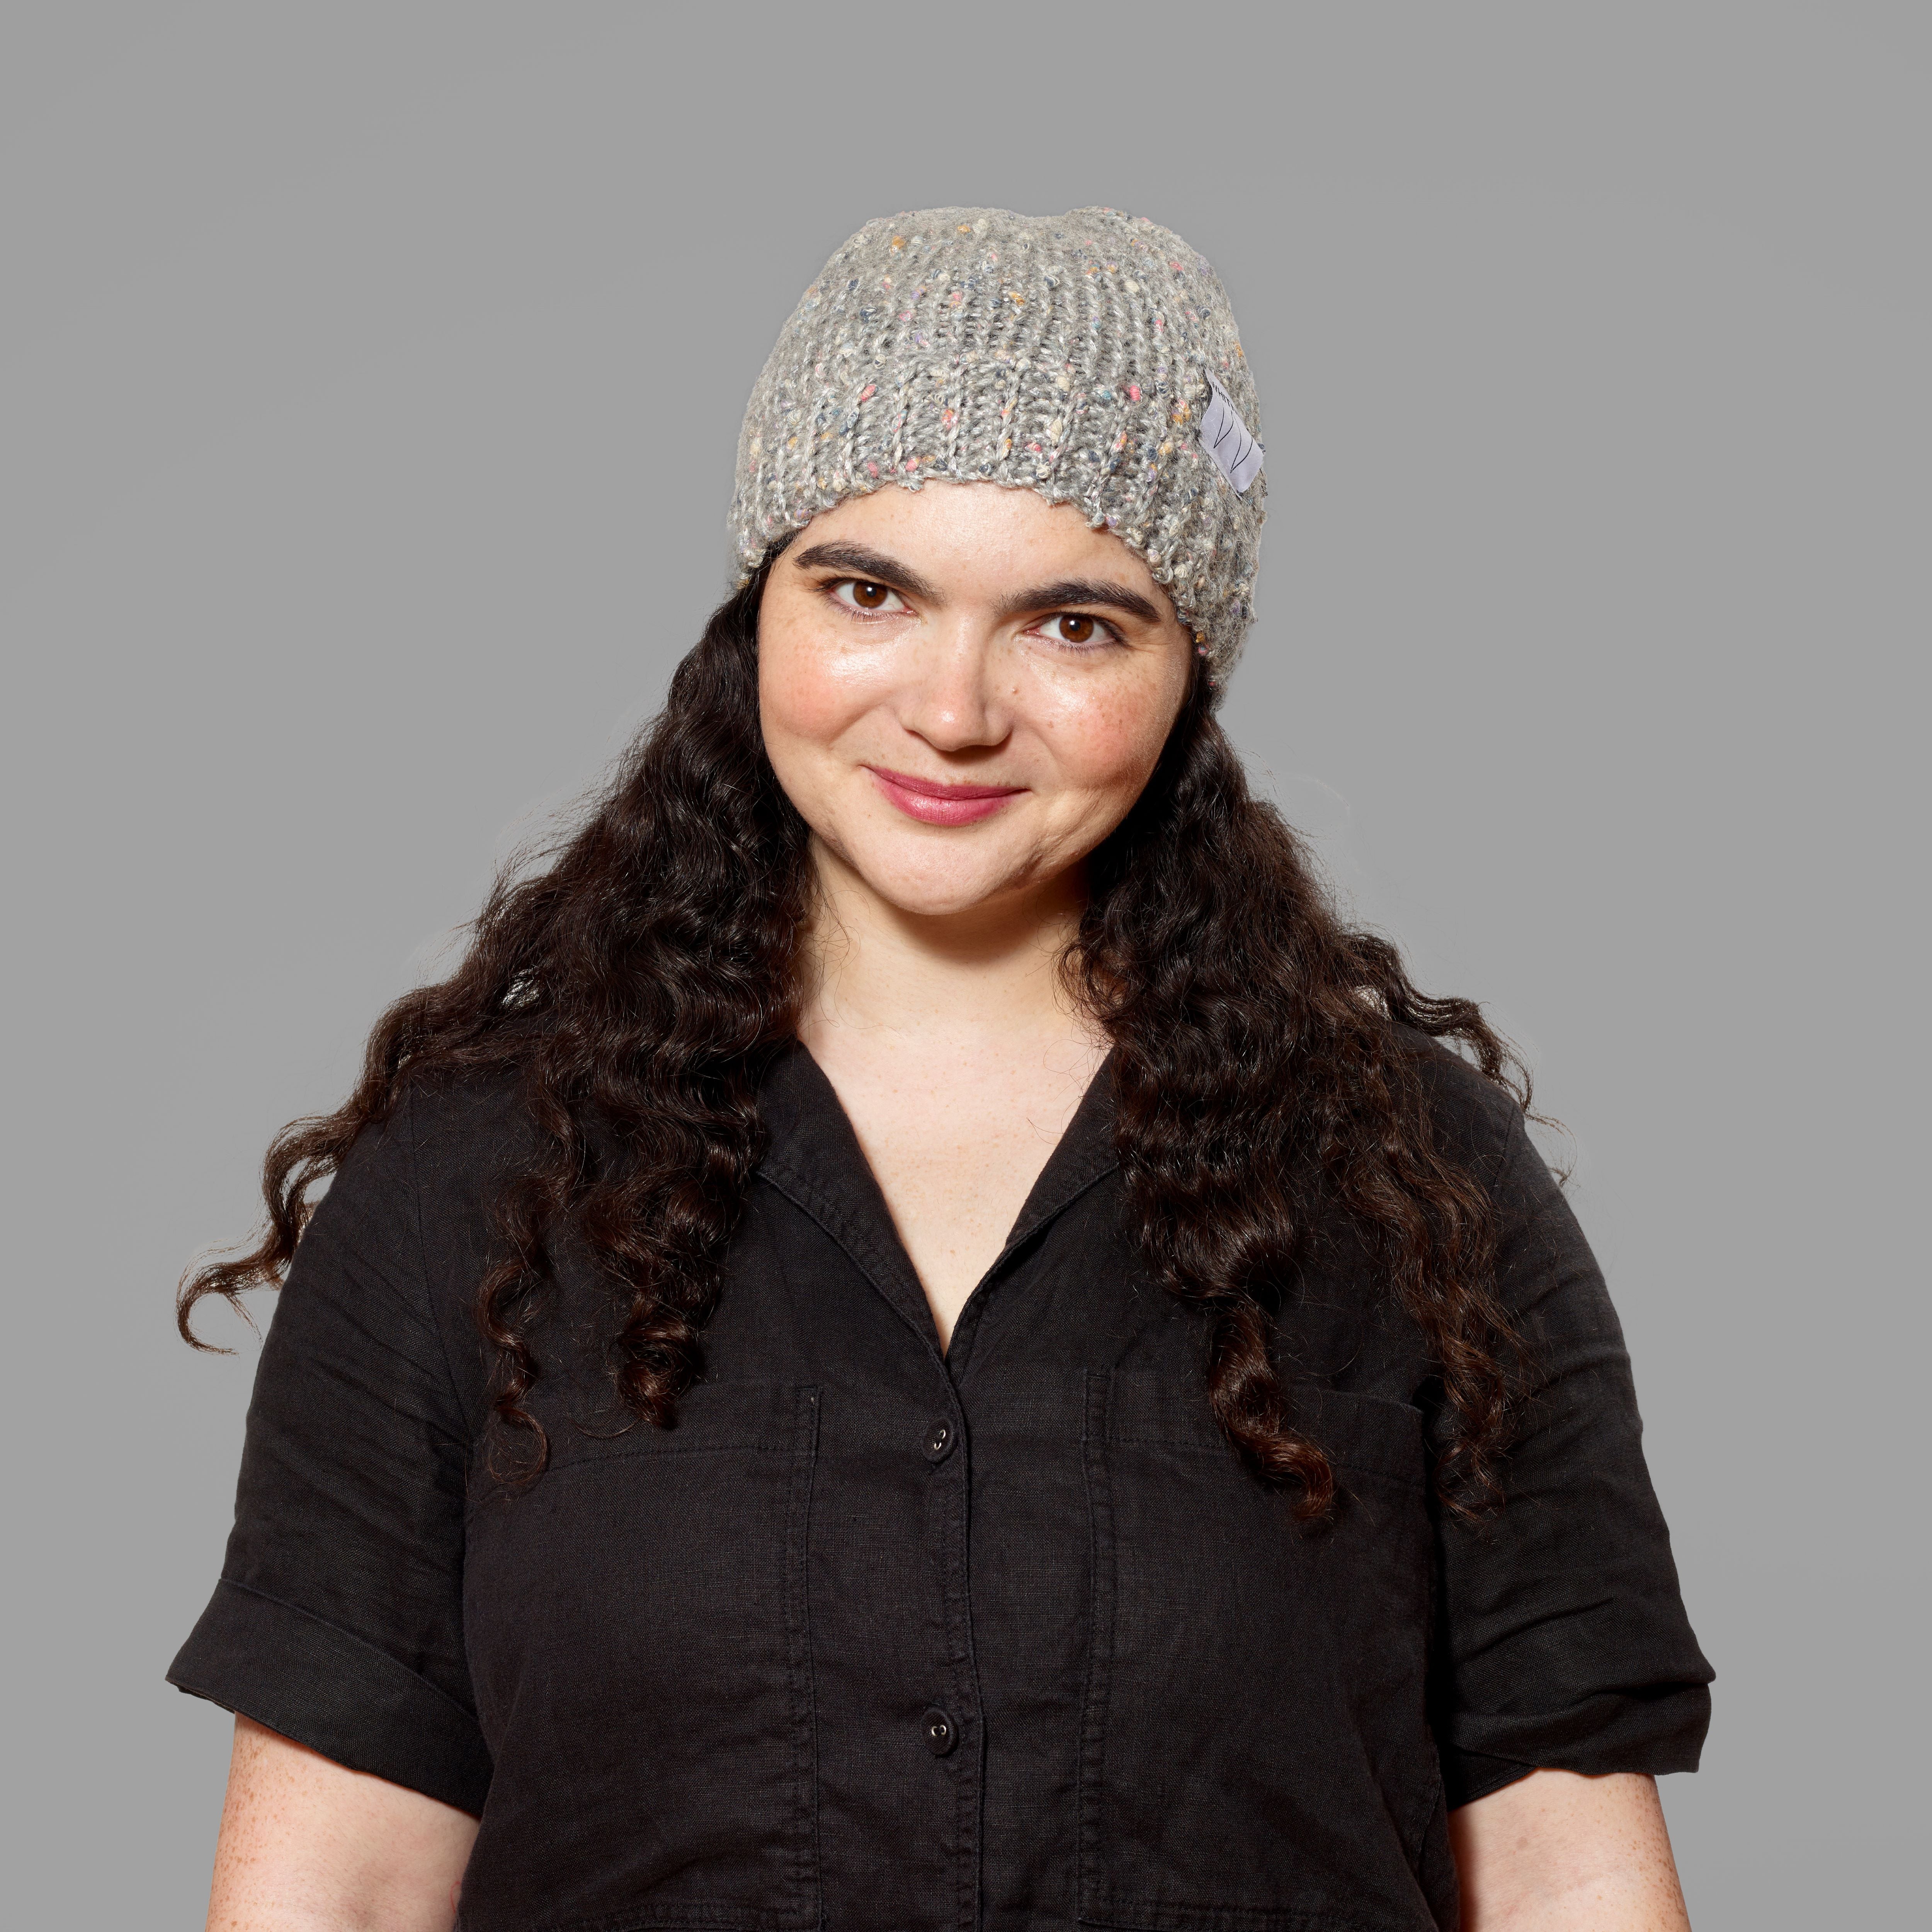 Model wearing 100% wool Whitney hat